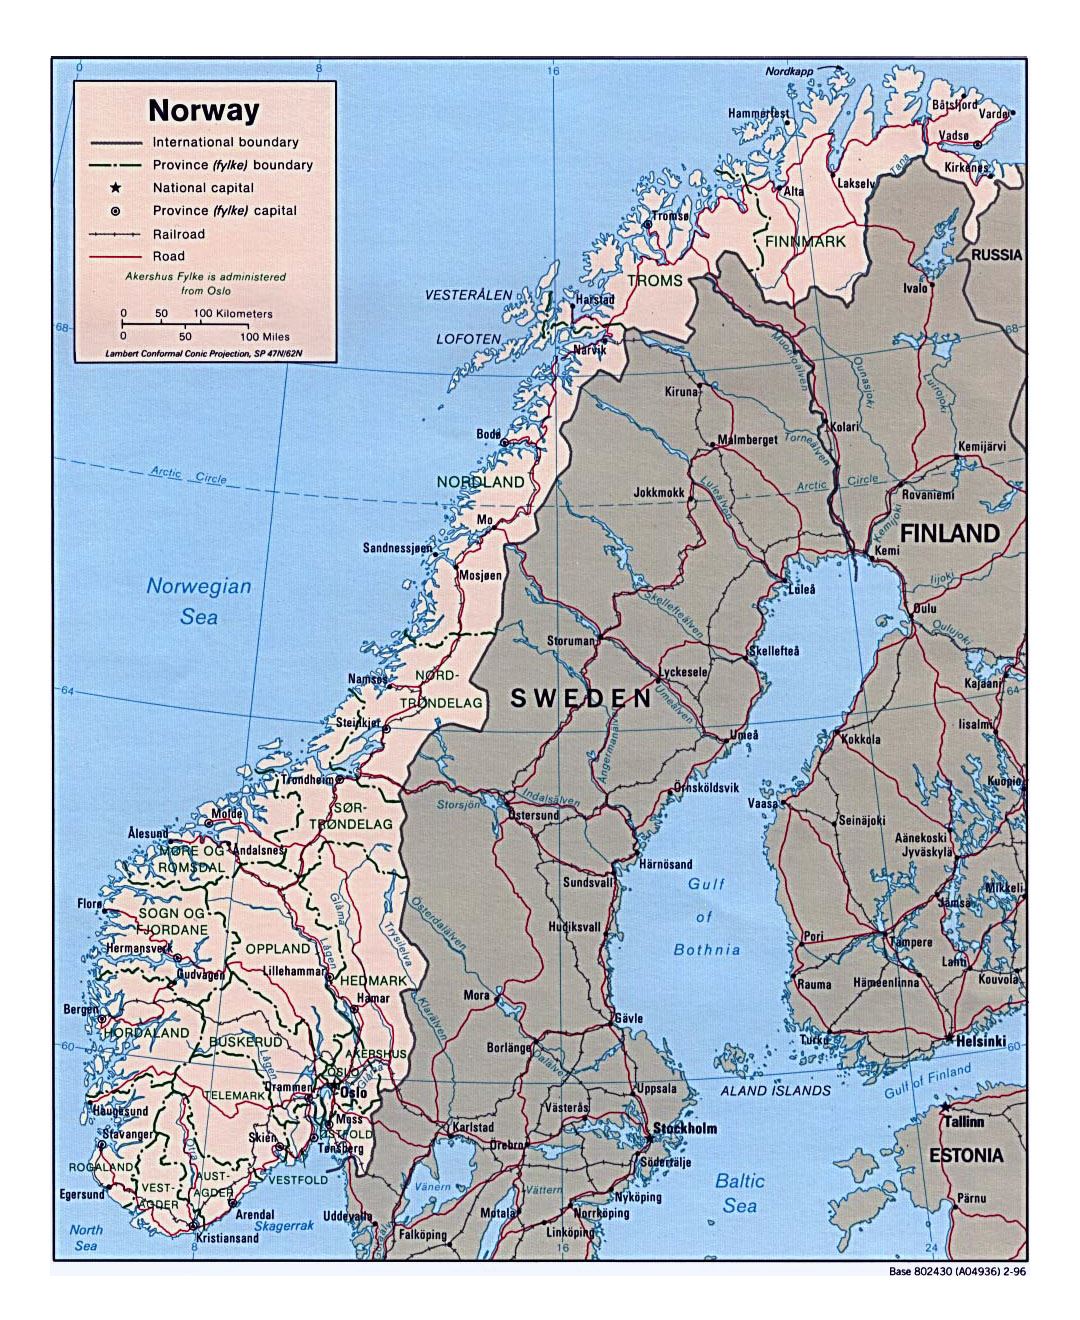 Detallado mapa político y administrativo de Noruega con carreteras y principales ciudades - 1996